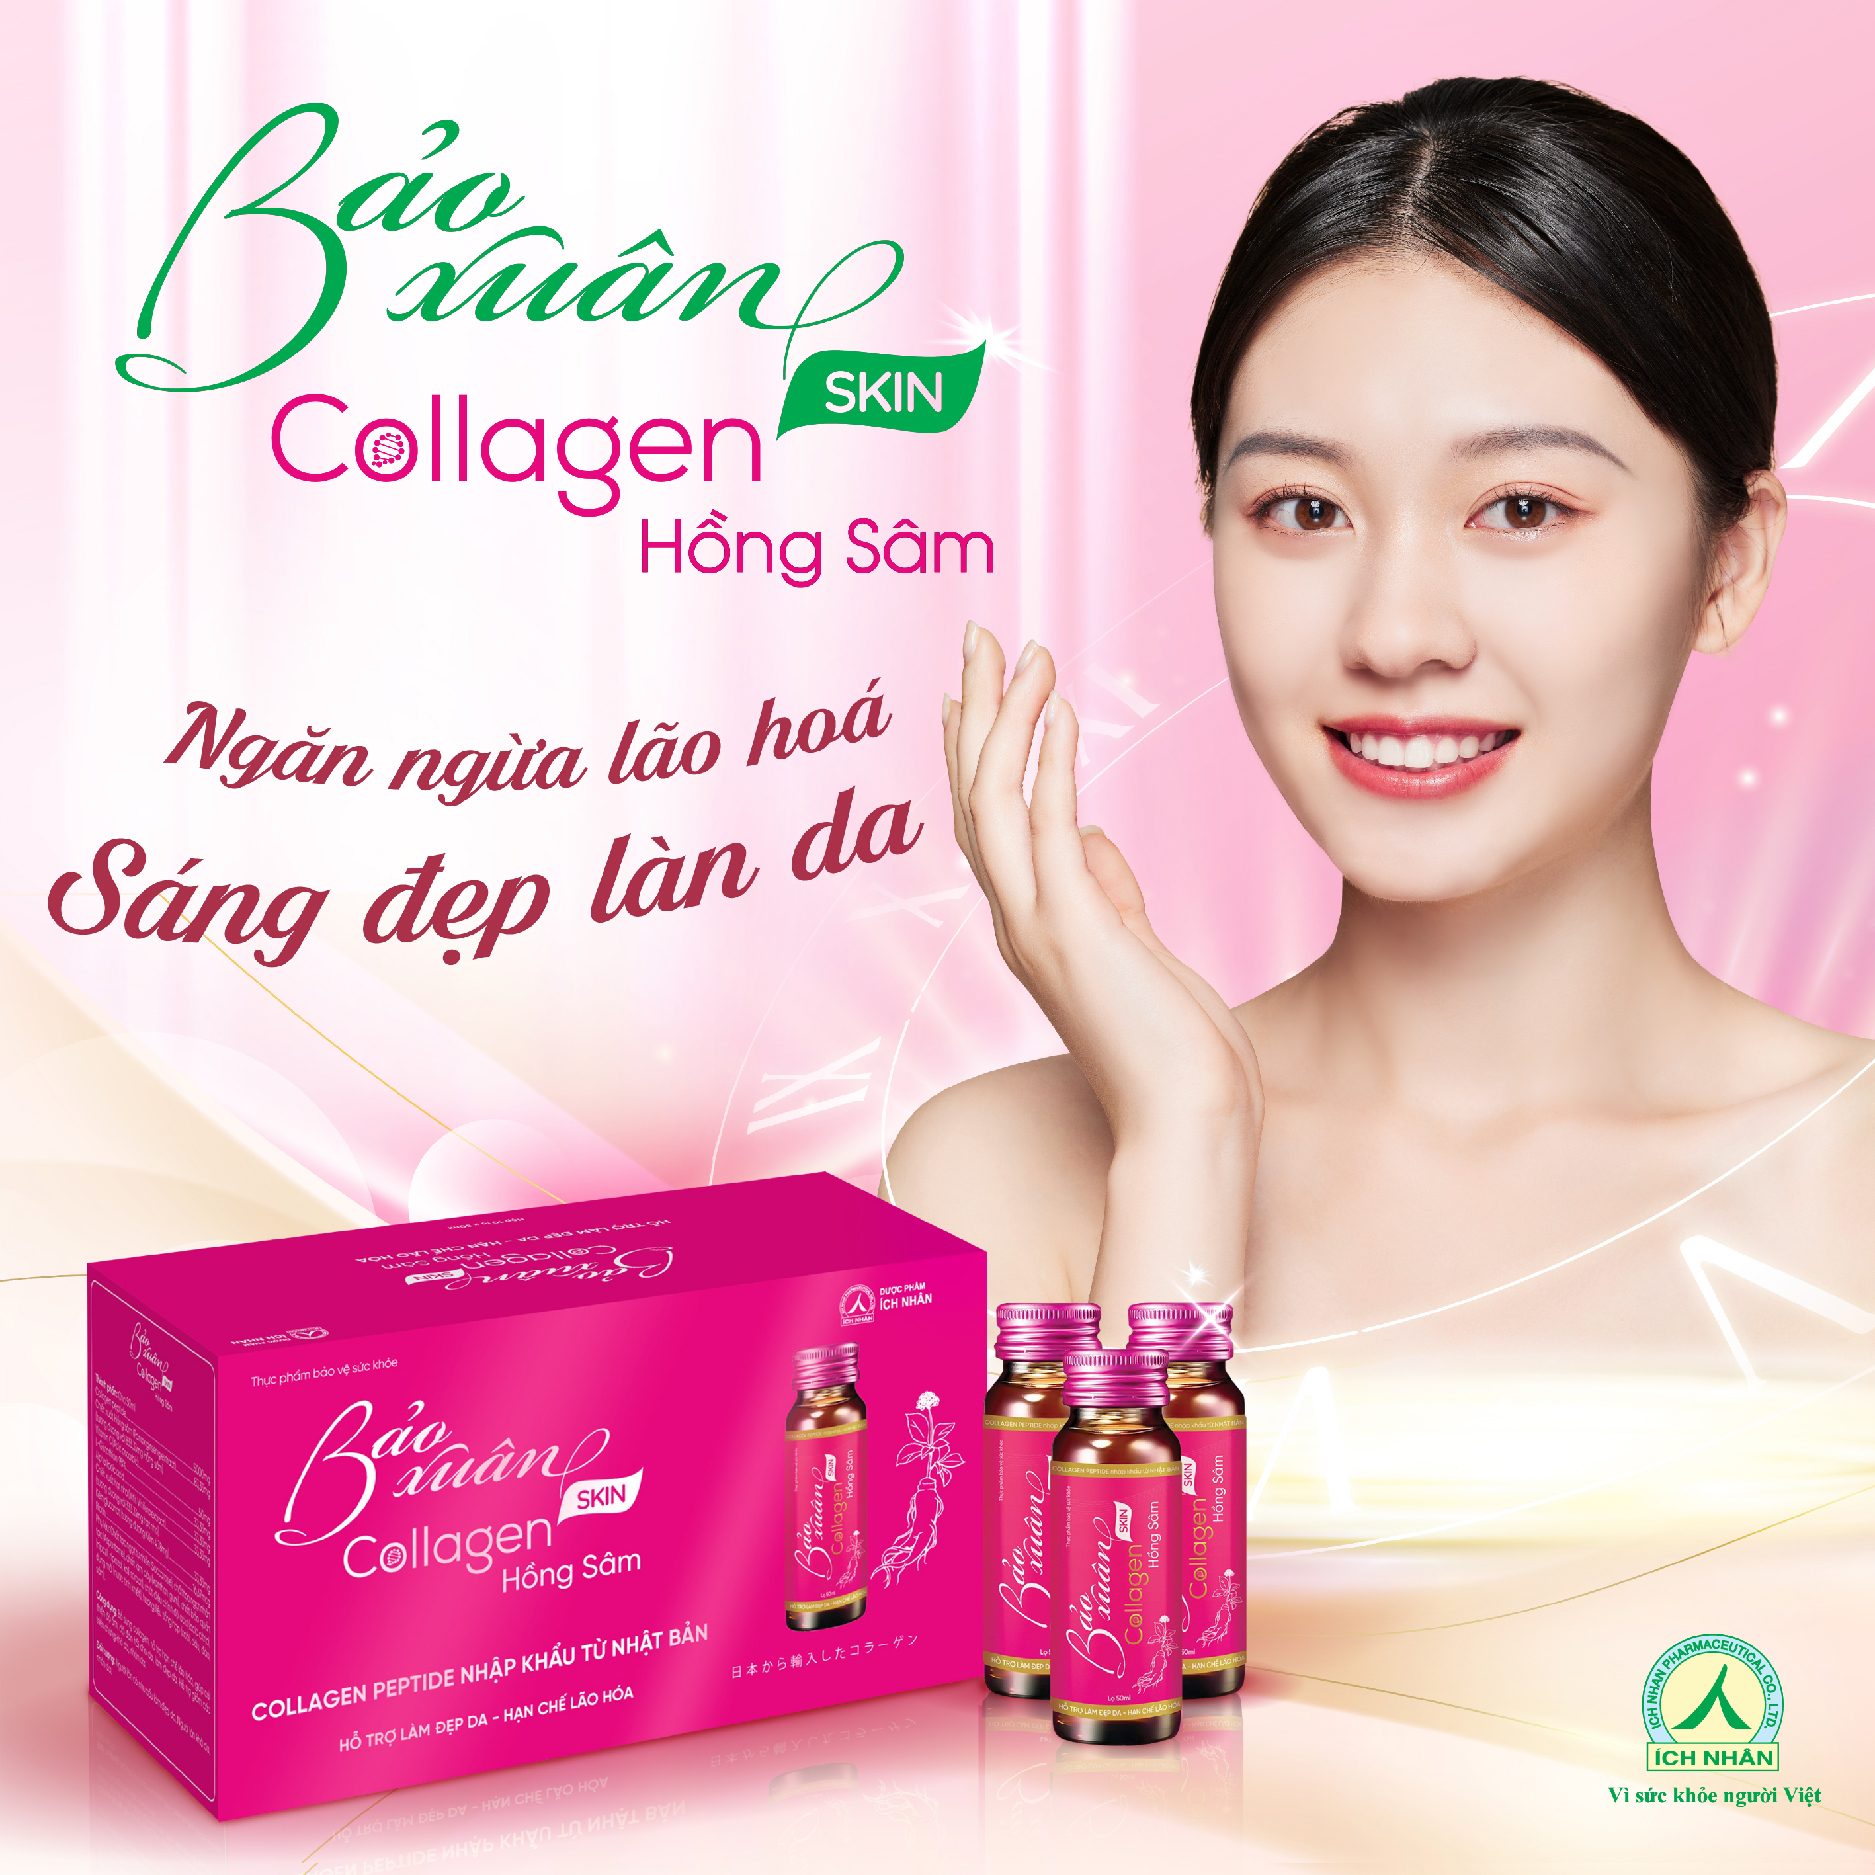 Combo 2 Nước Uống Bổ Sung Bảo Xuân Skin Collagen Hồng Sâm giúp hạn chế lão hóa, tăng đàn hồi cho da, làm sáng đẹp da Hộp 10 Lọ x50ml